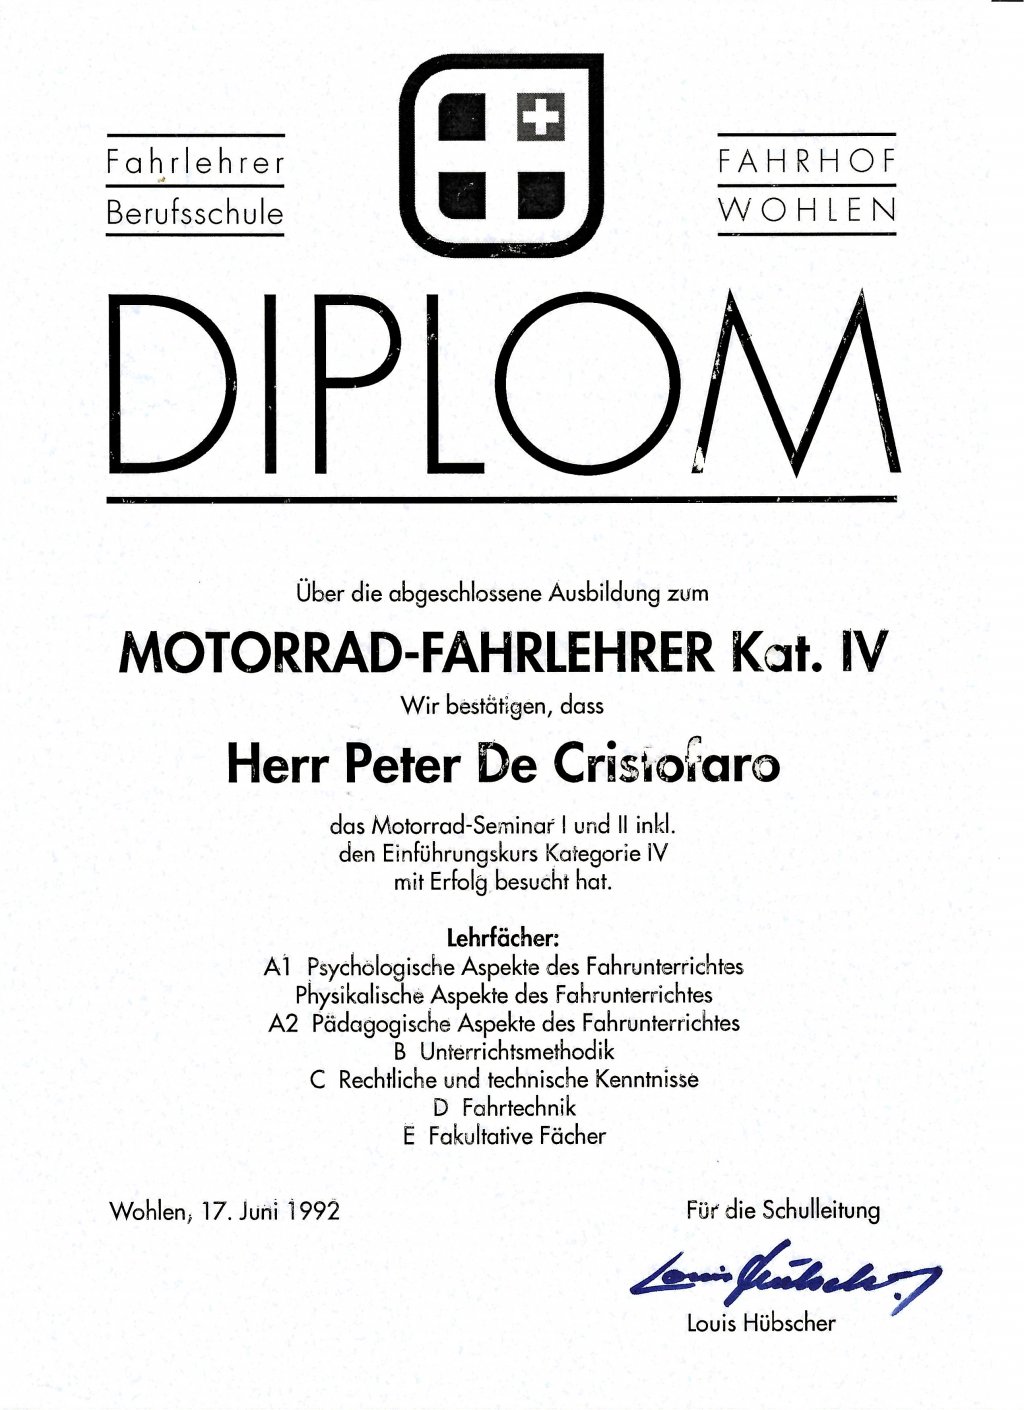 Motorrad Fahrlehrer Diplom.jpg